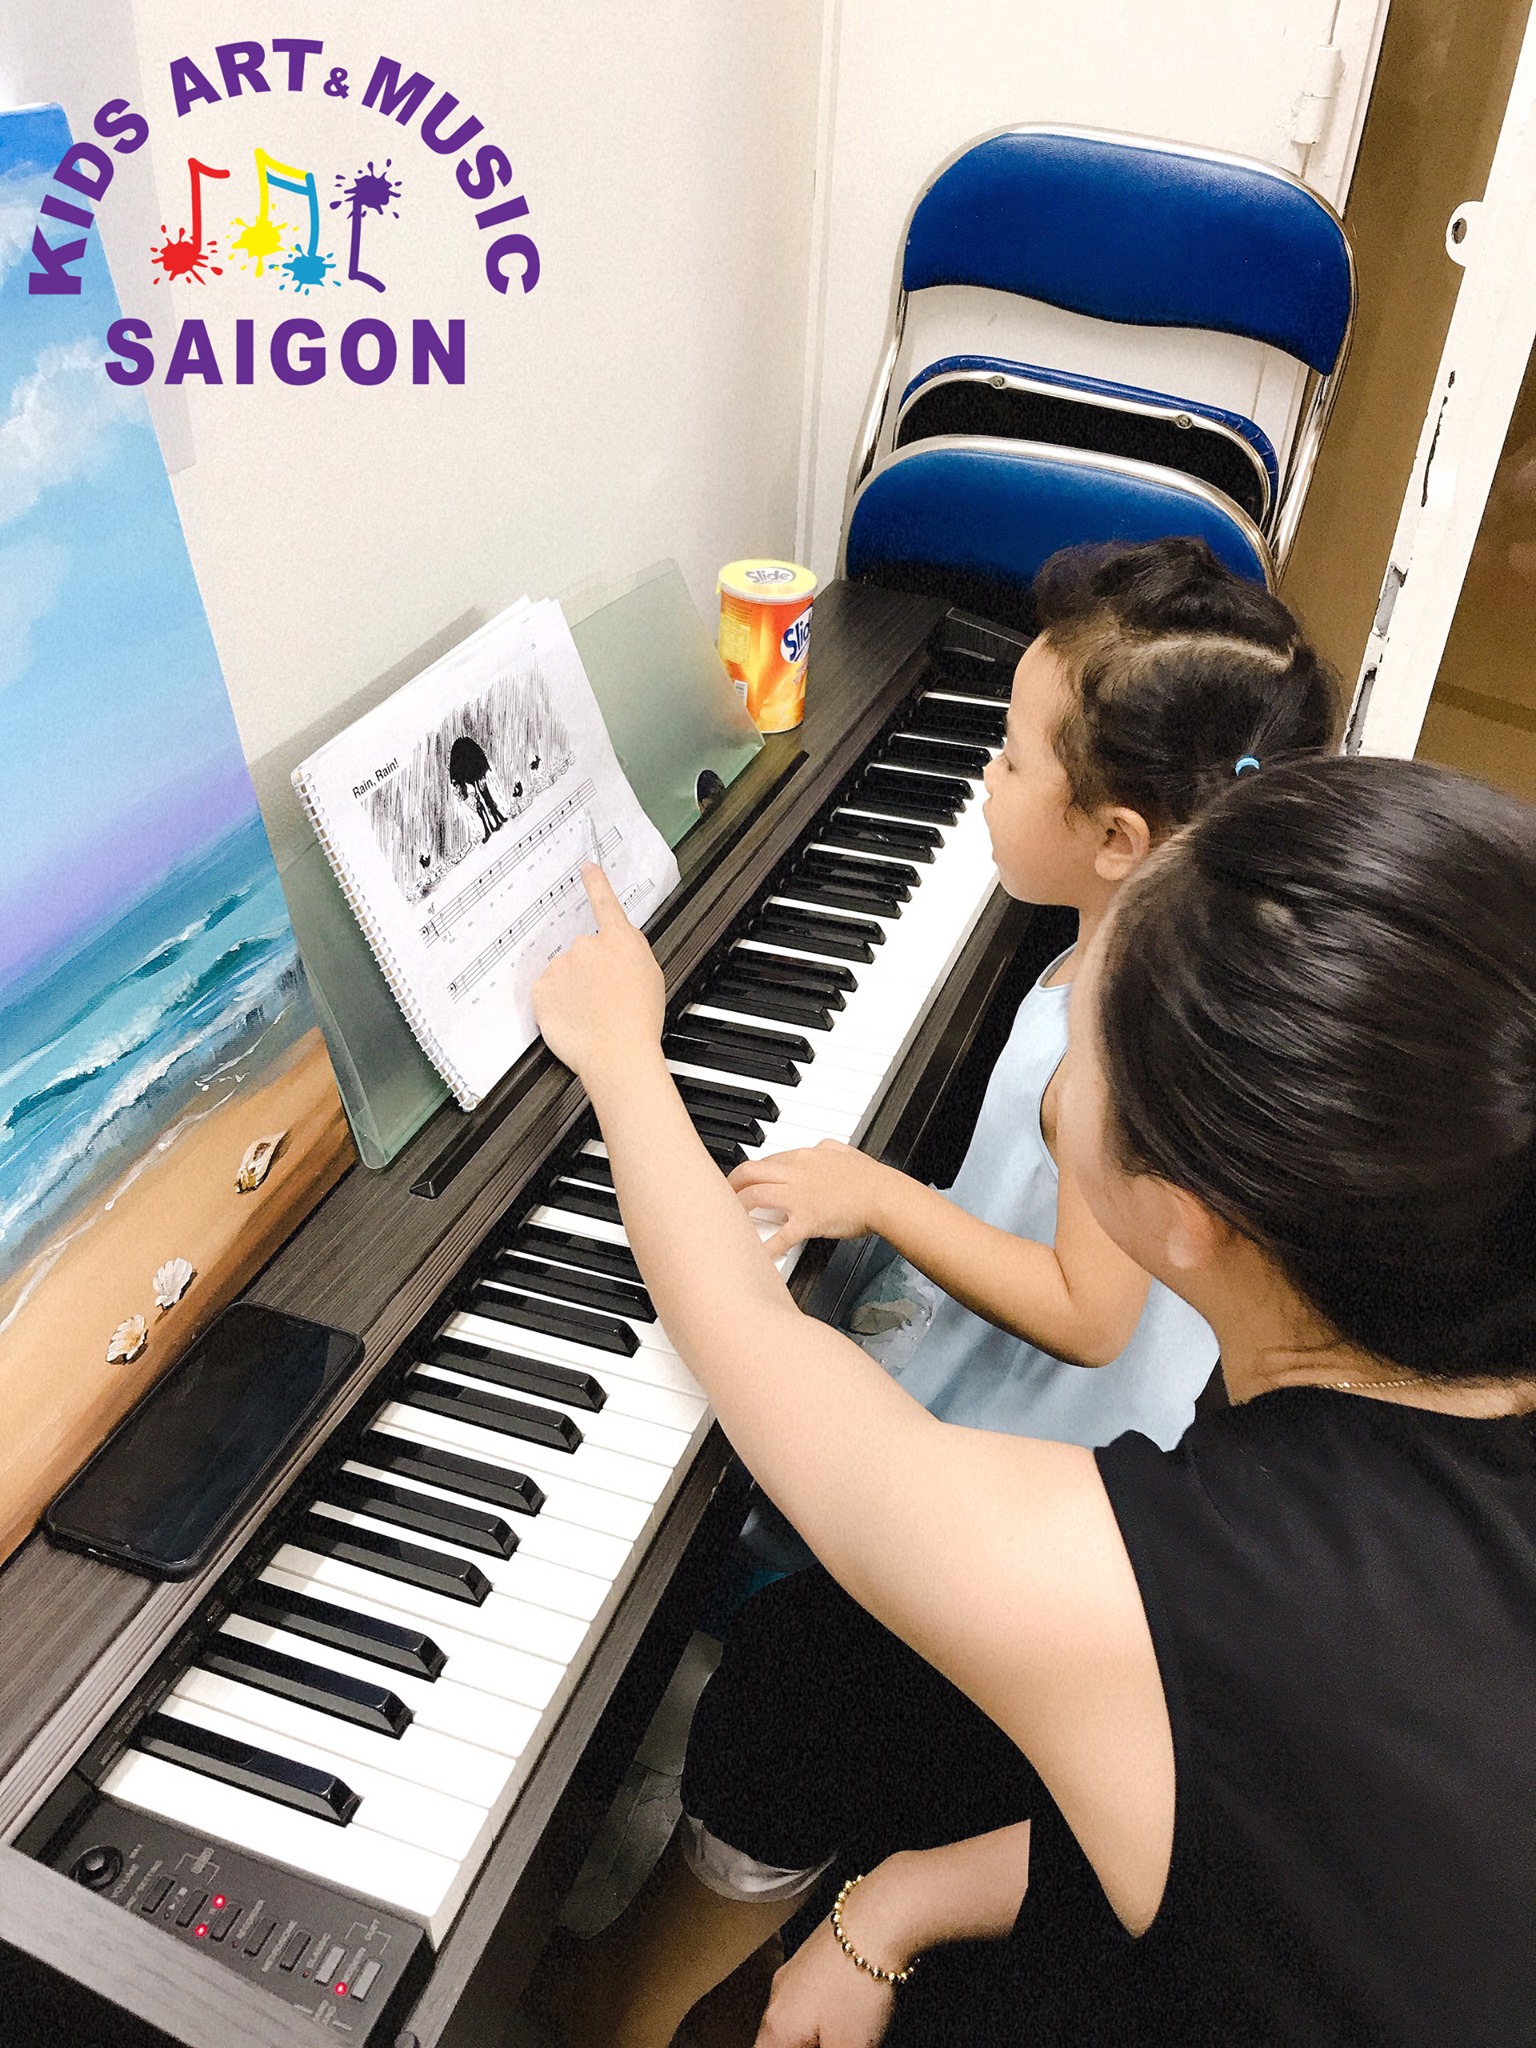 Lớp học Piano cho bé ở Hải Phòng - hình ảnh 3